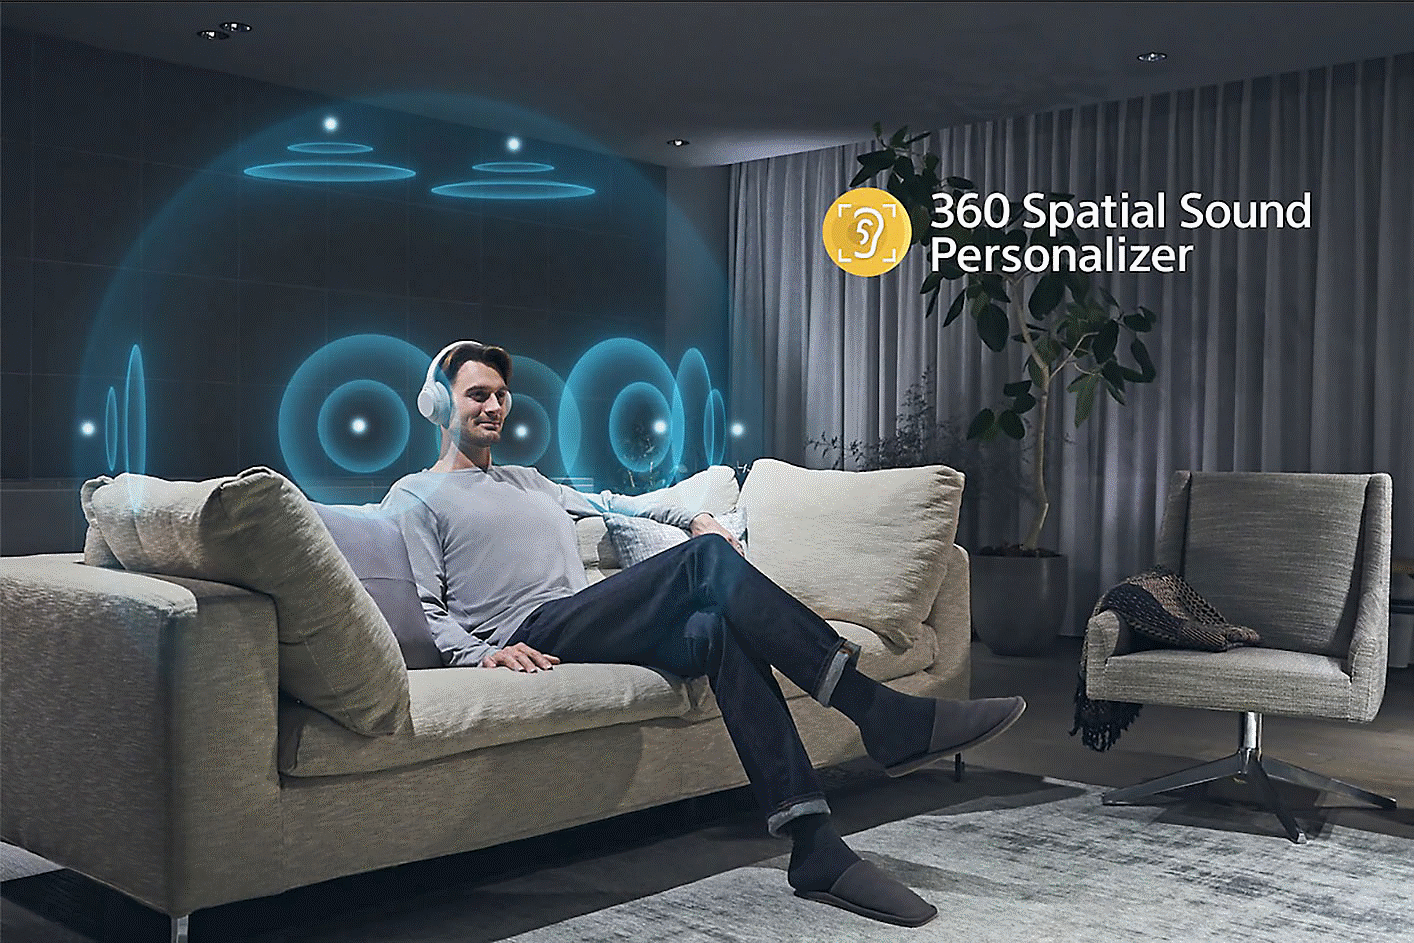 Slika osobe na sofi sa slušalicama, okružene koncentričnim krugovima i logotipom 360 Spatial Sound s desne strane